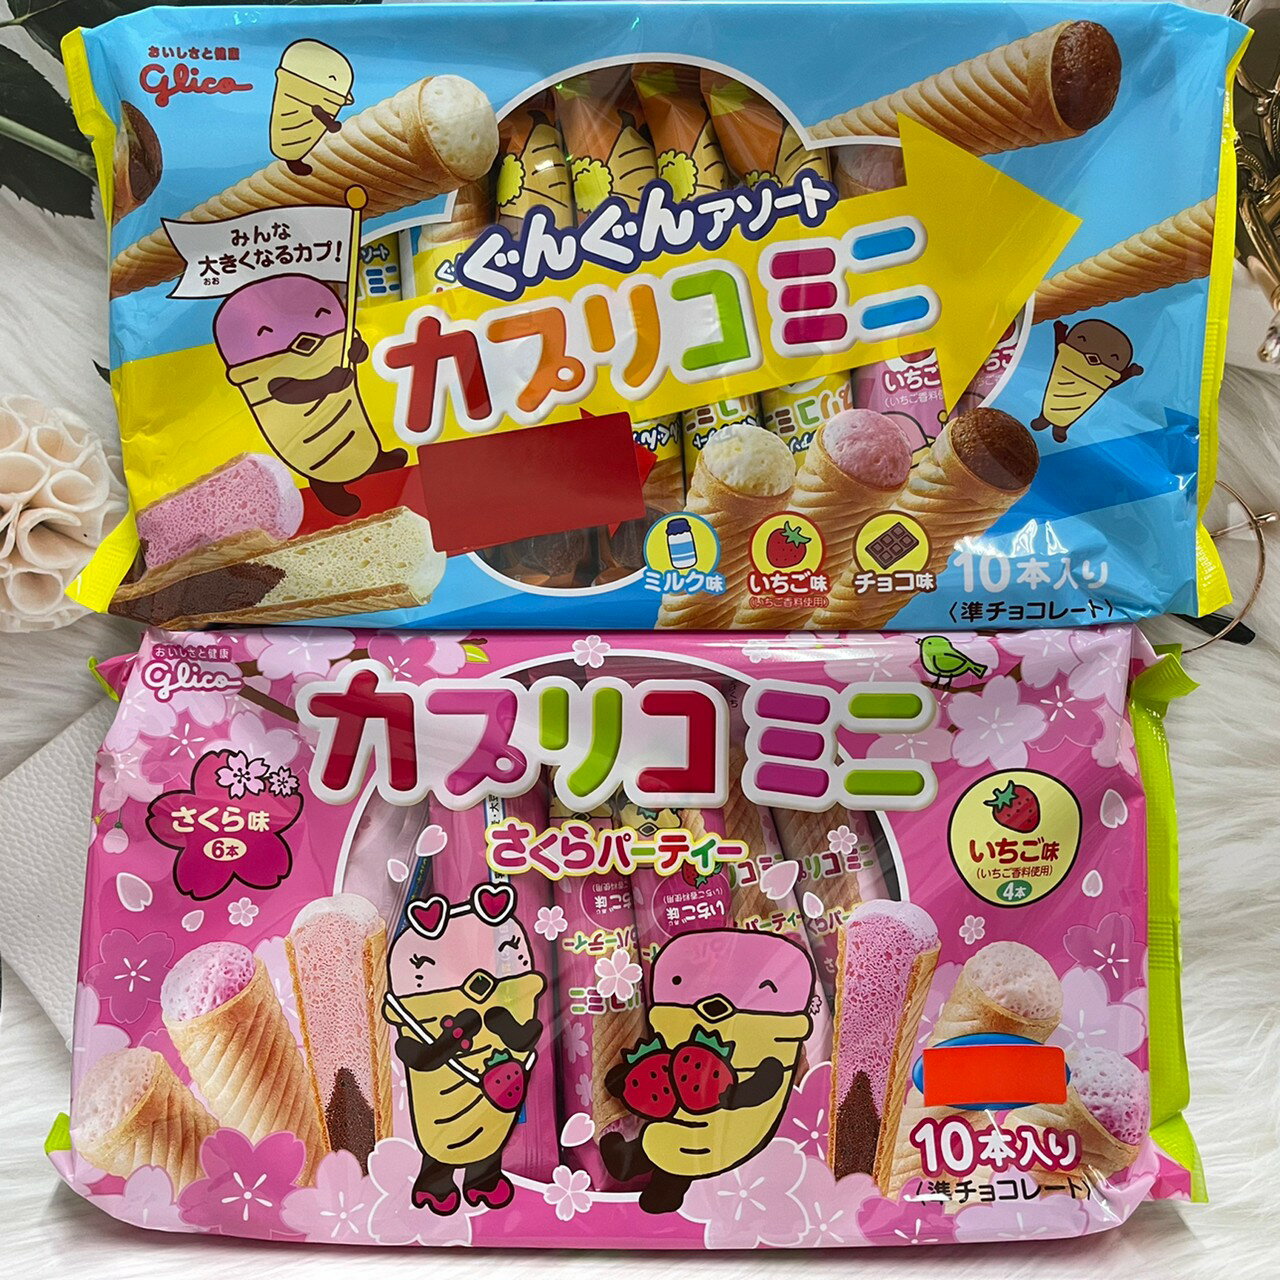 日本 Glico 固力果 冰淇淋甜筒餅乾 冰淇淋餅乾 甜筒餅乾 迷你甜筒餅乾 10本入｜全店$199免運